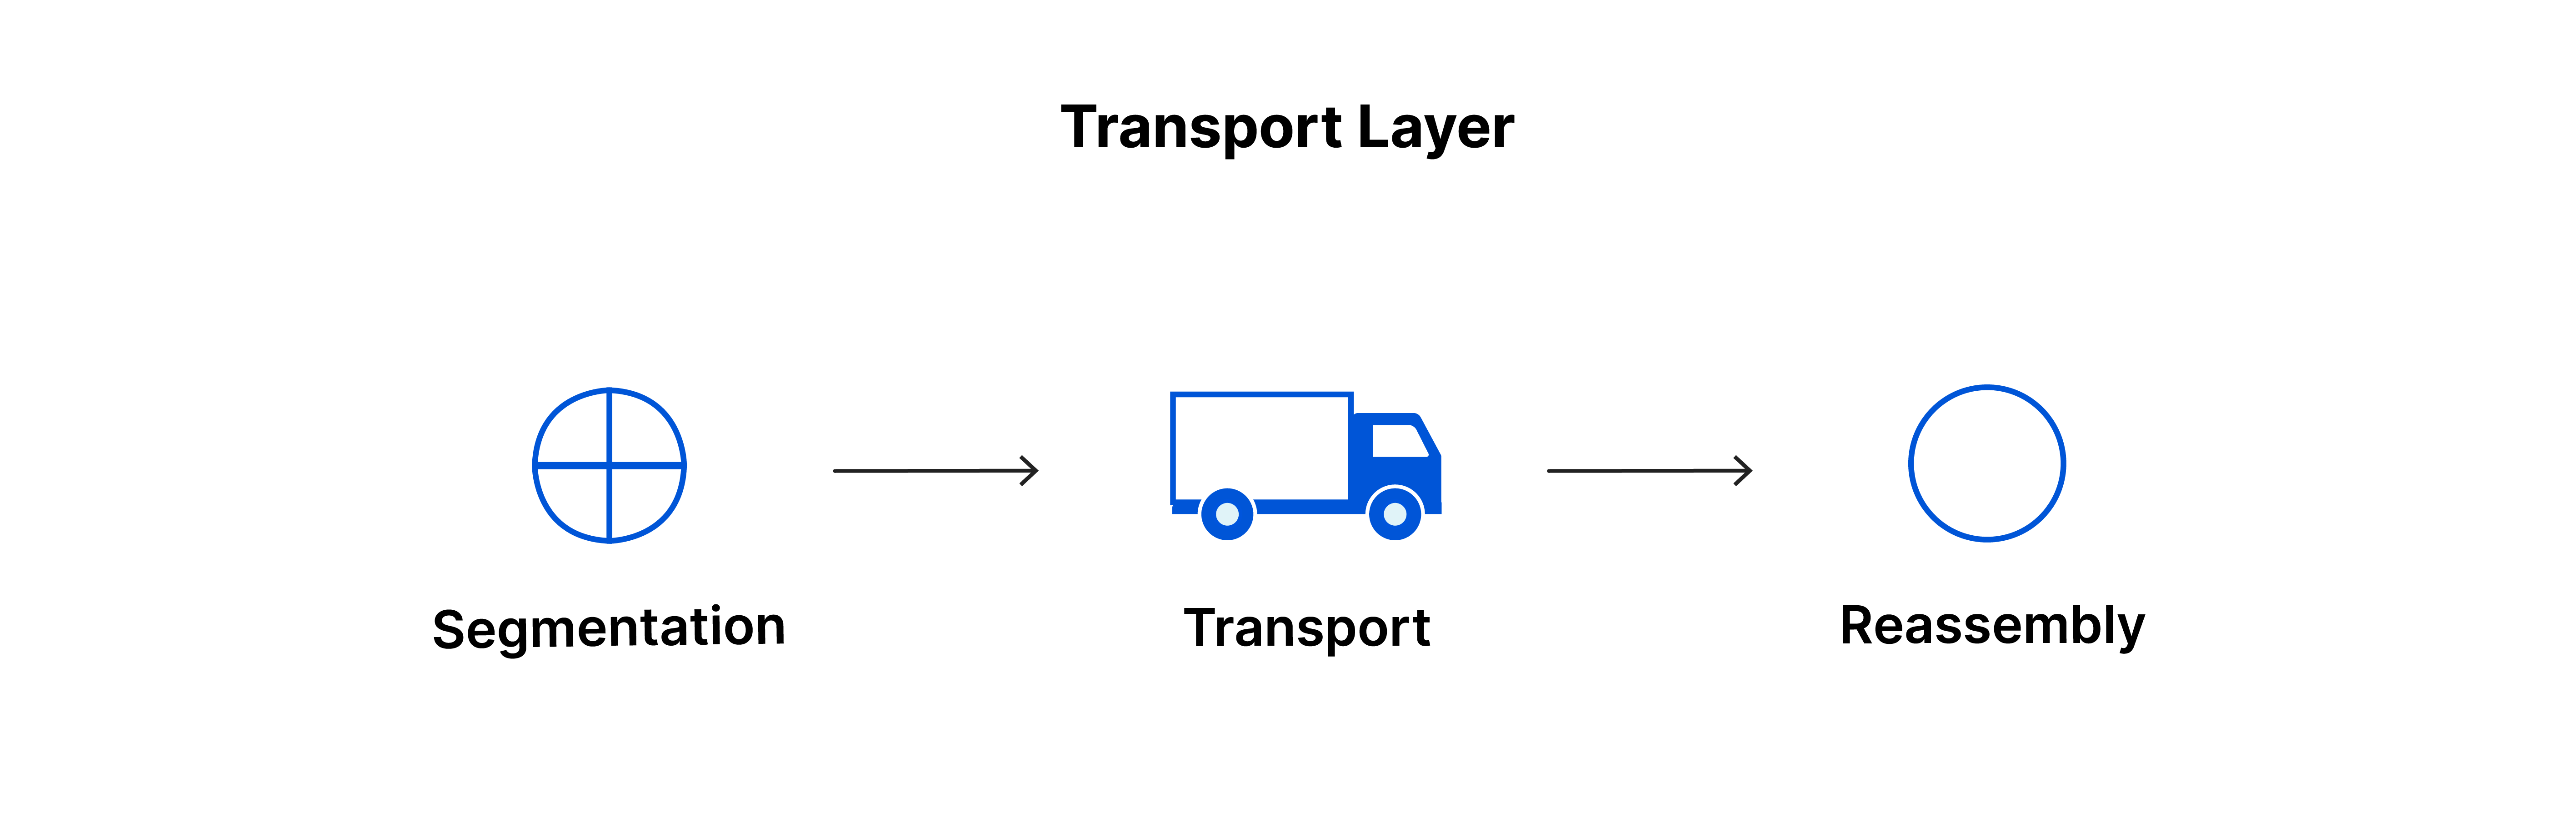 La capa de transporte: segmento, transporte, reensamblado